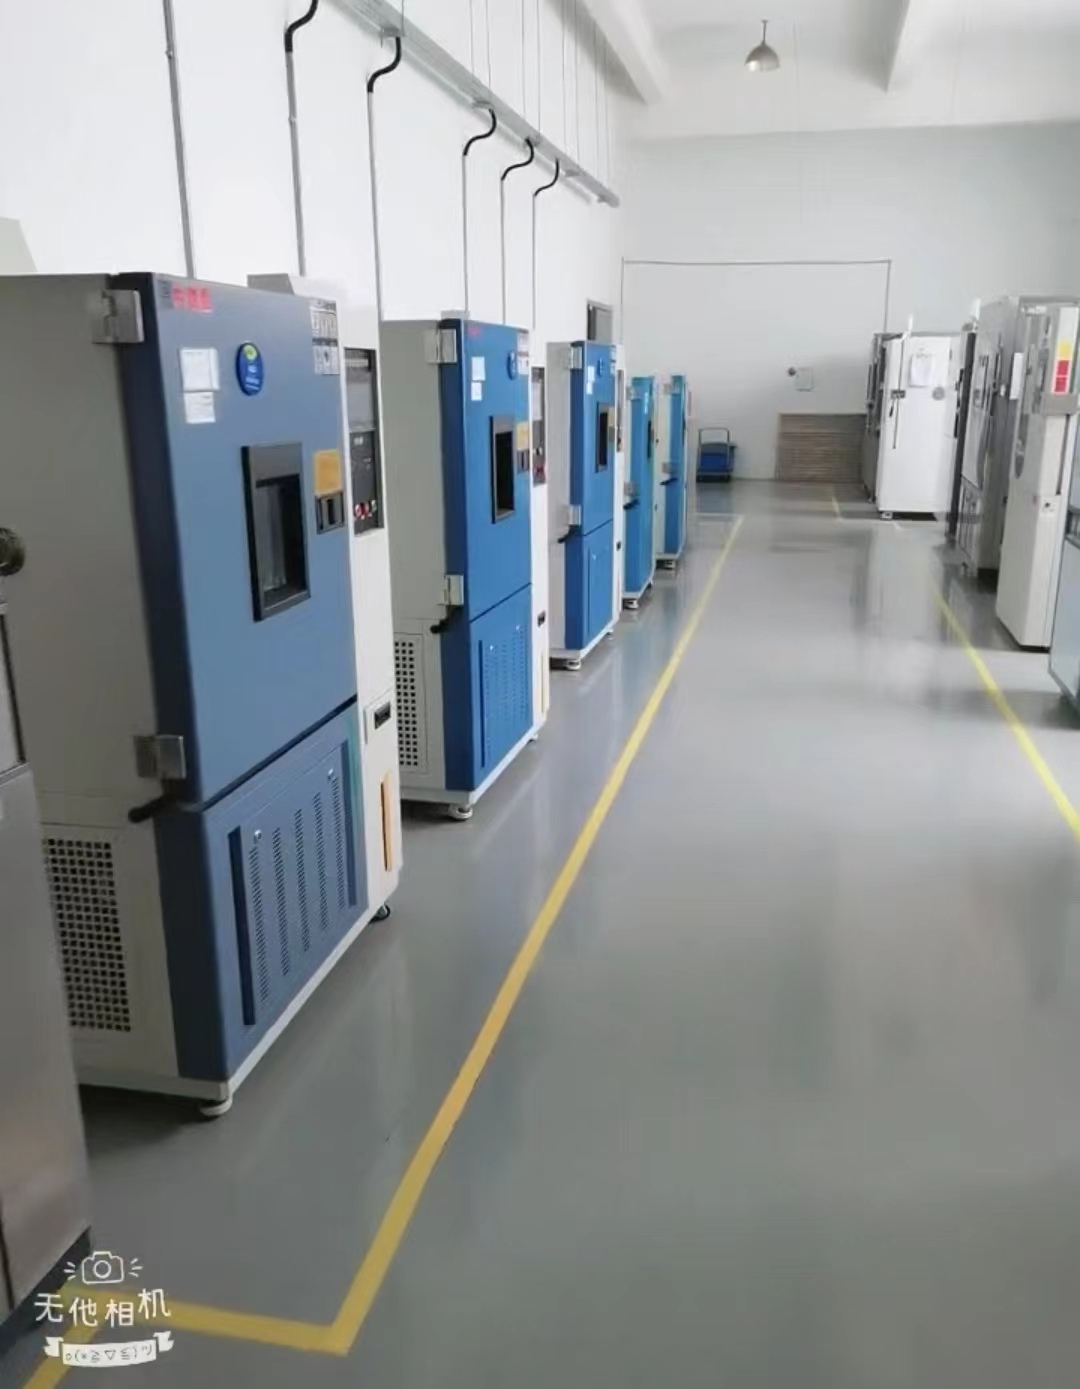 澳门新葡萄新京250第三方检验实验室仪器设备维护保养